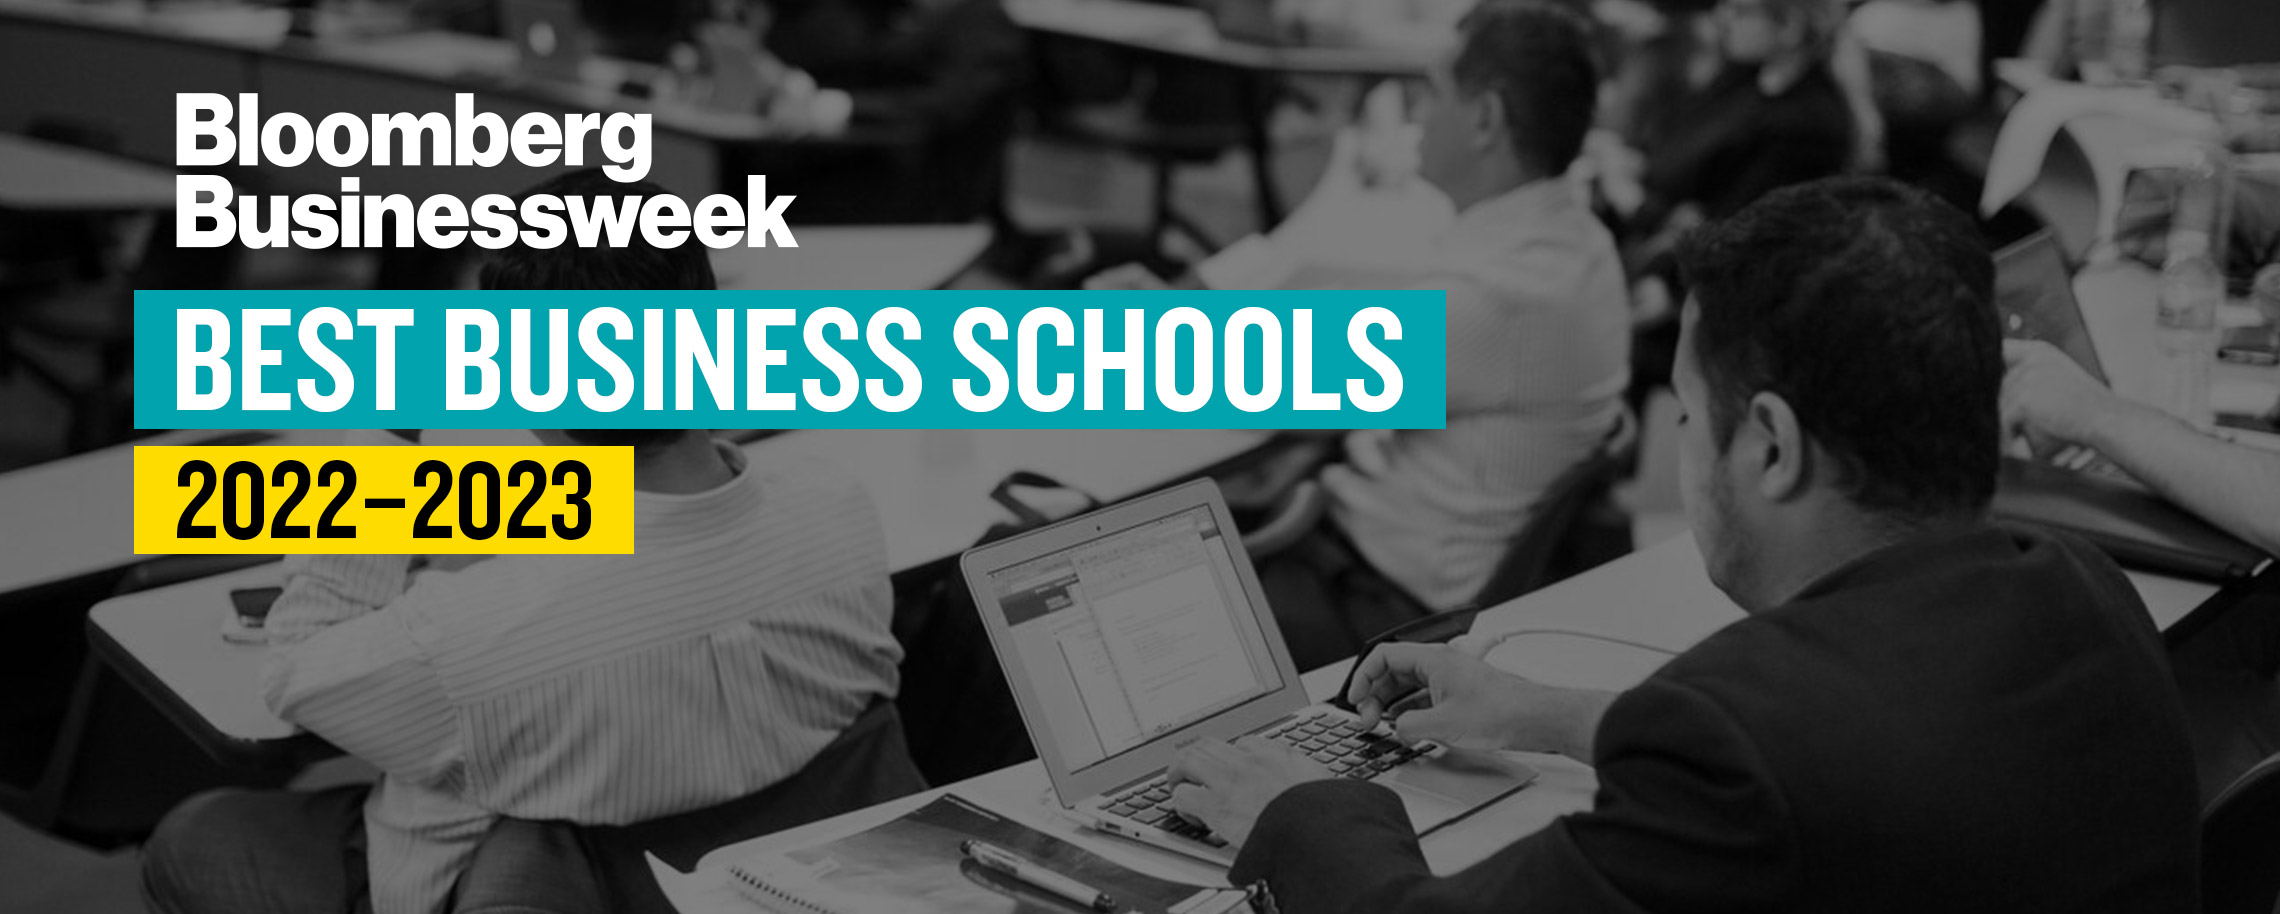 Bloomberg Businessweek Best Business Schools 2022-2023